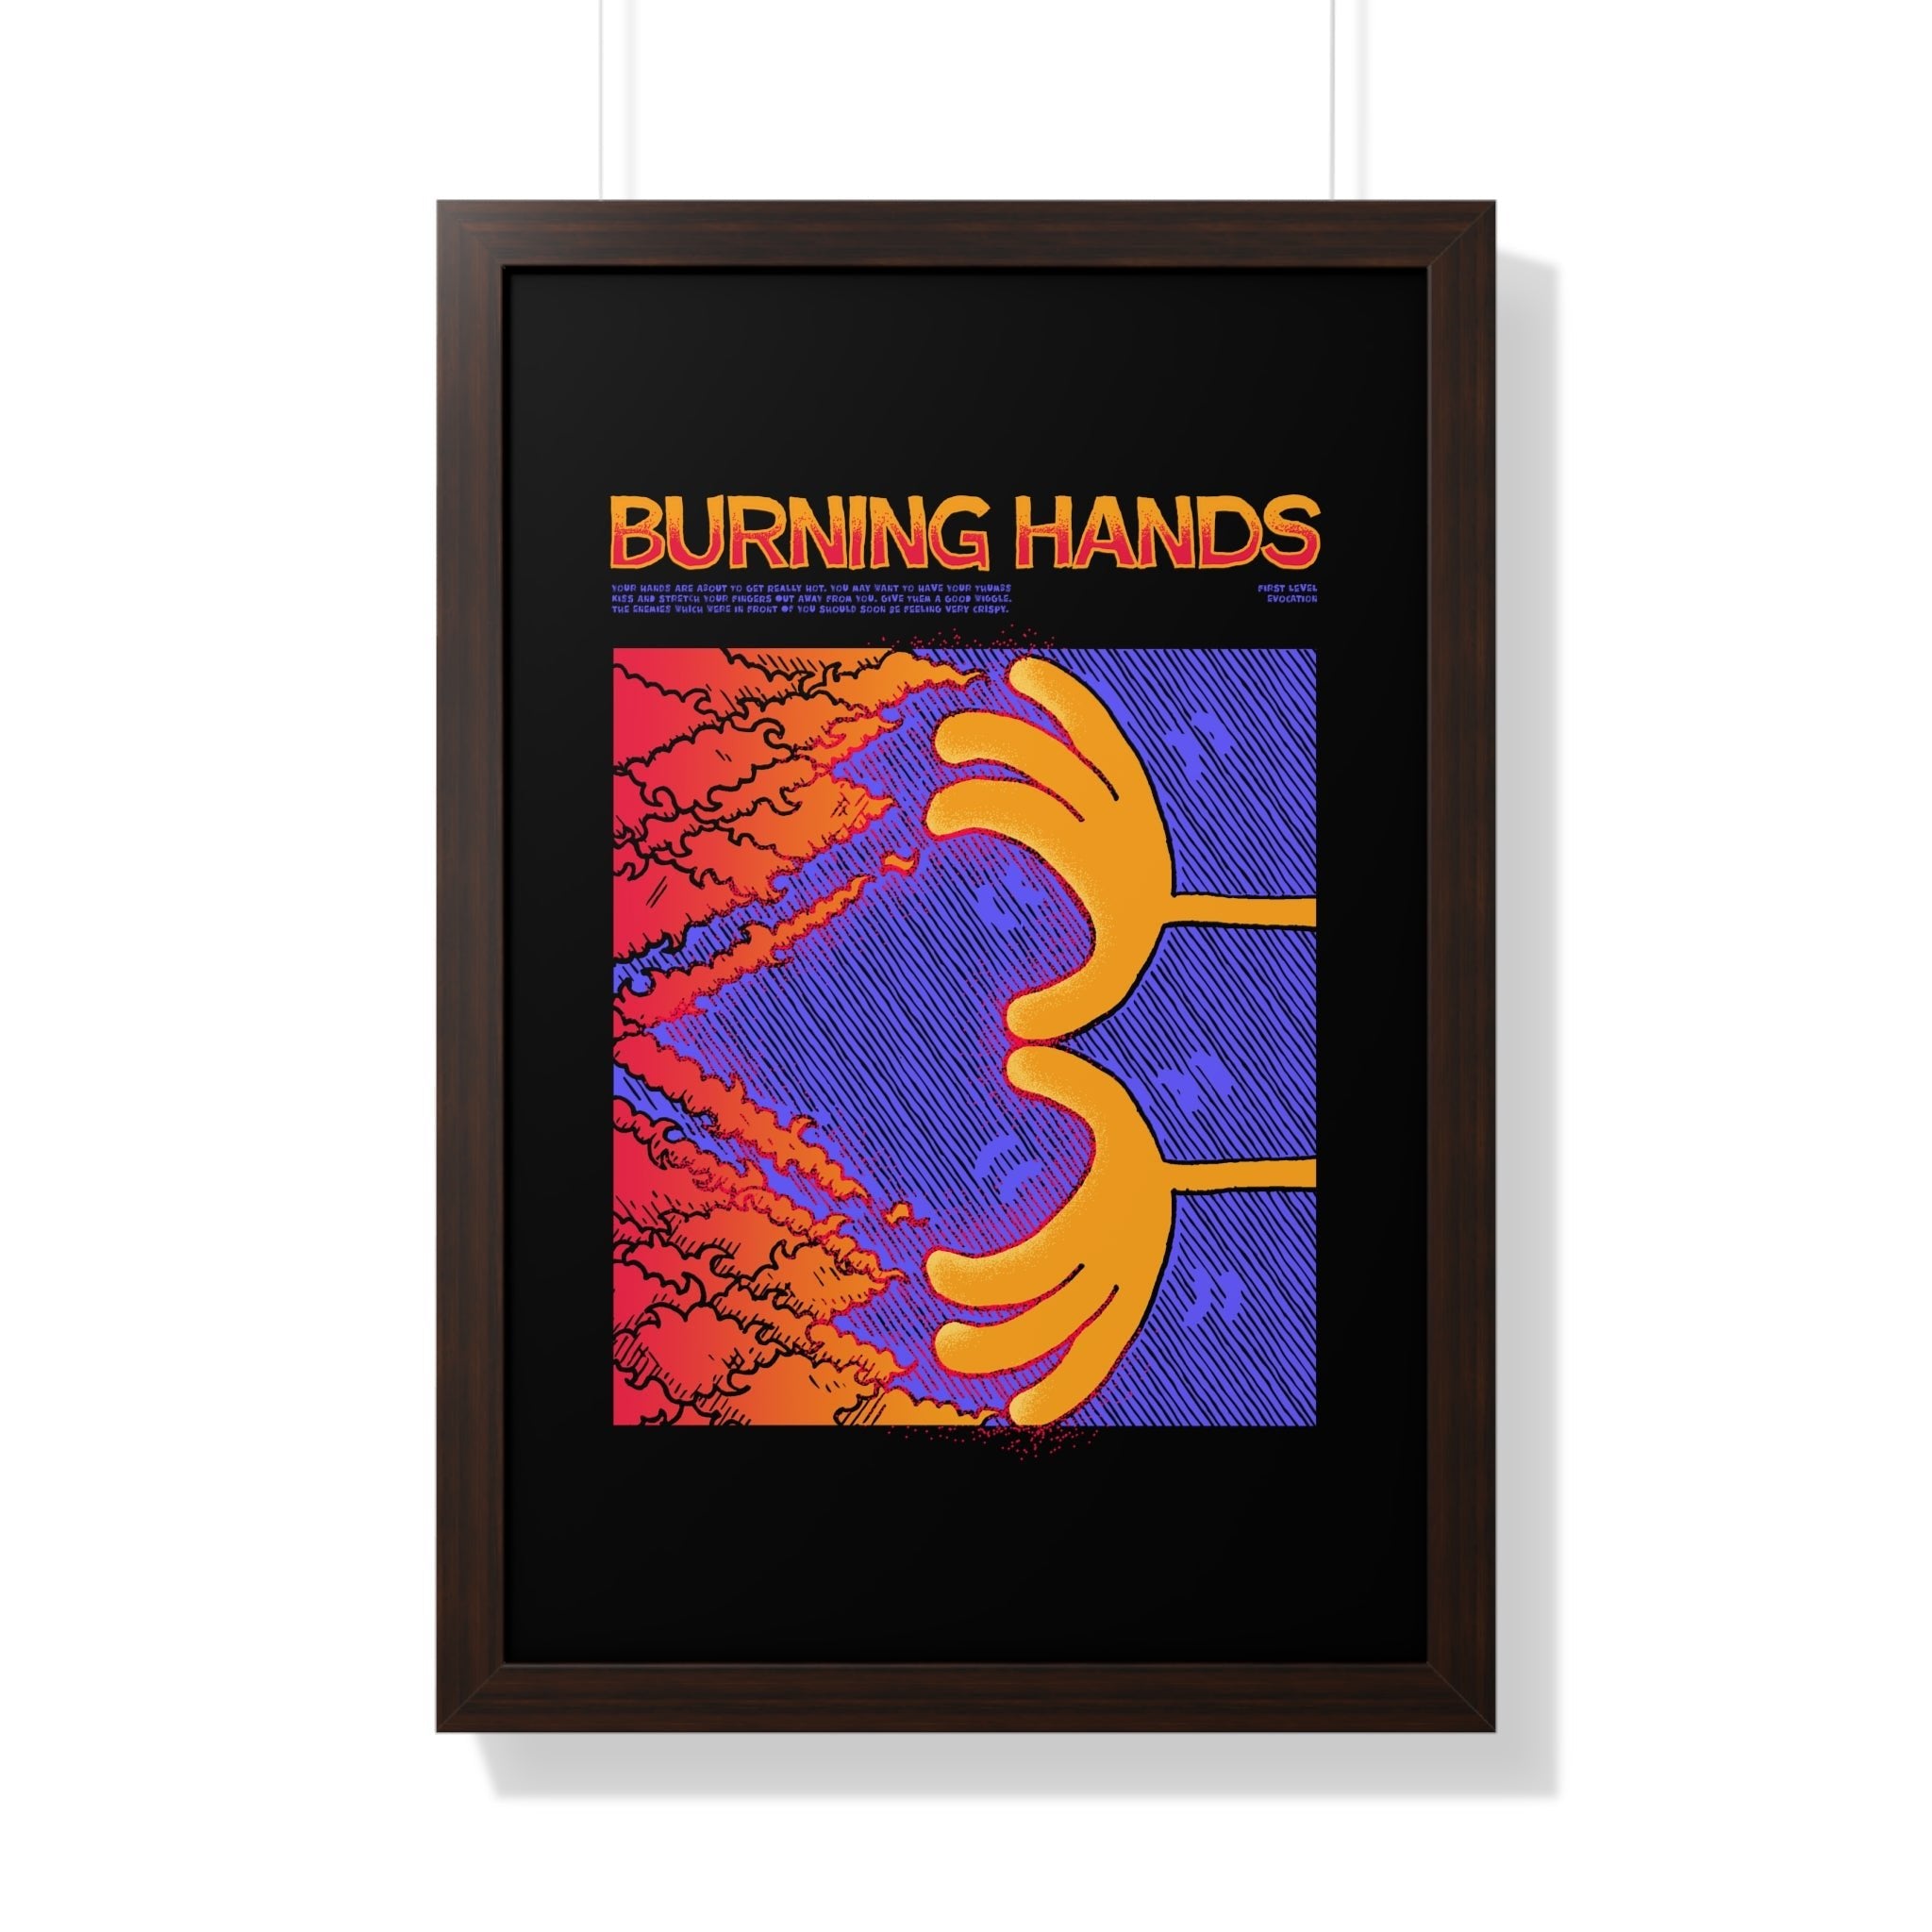 Burning Hands | Framed Poster - Framed Poster - Ace of Gnomes - 10281493118602416059